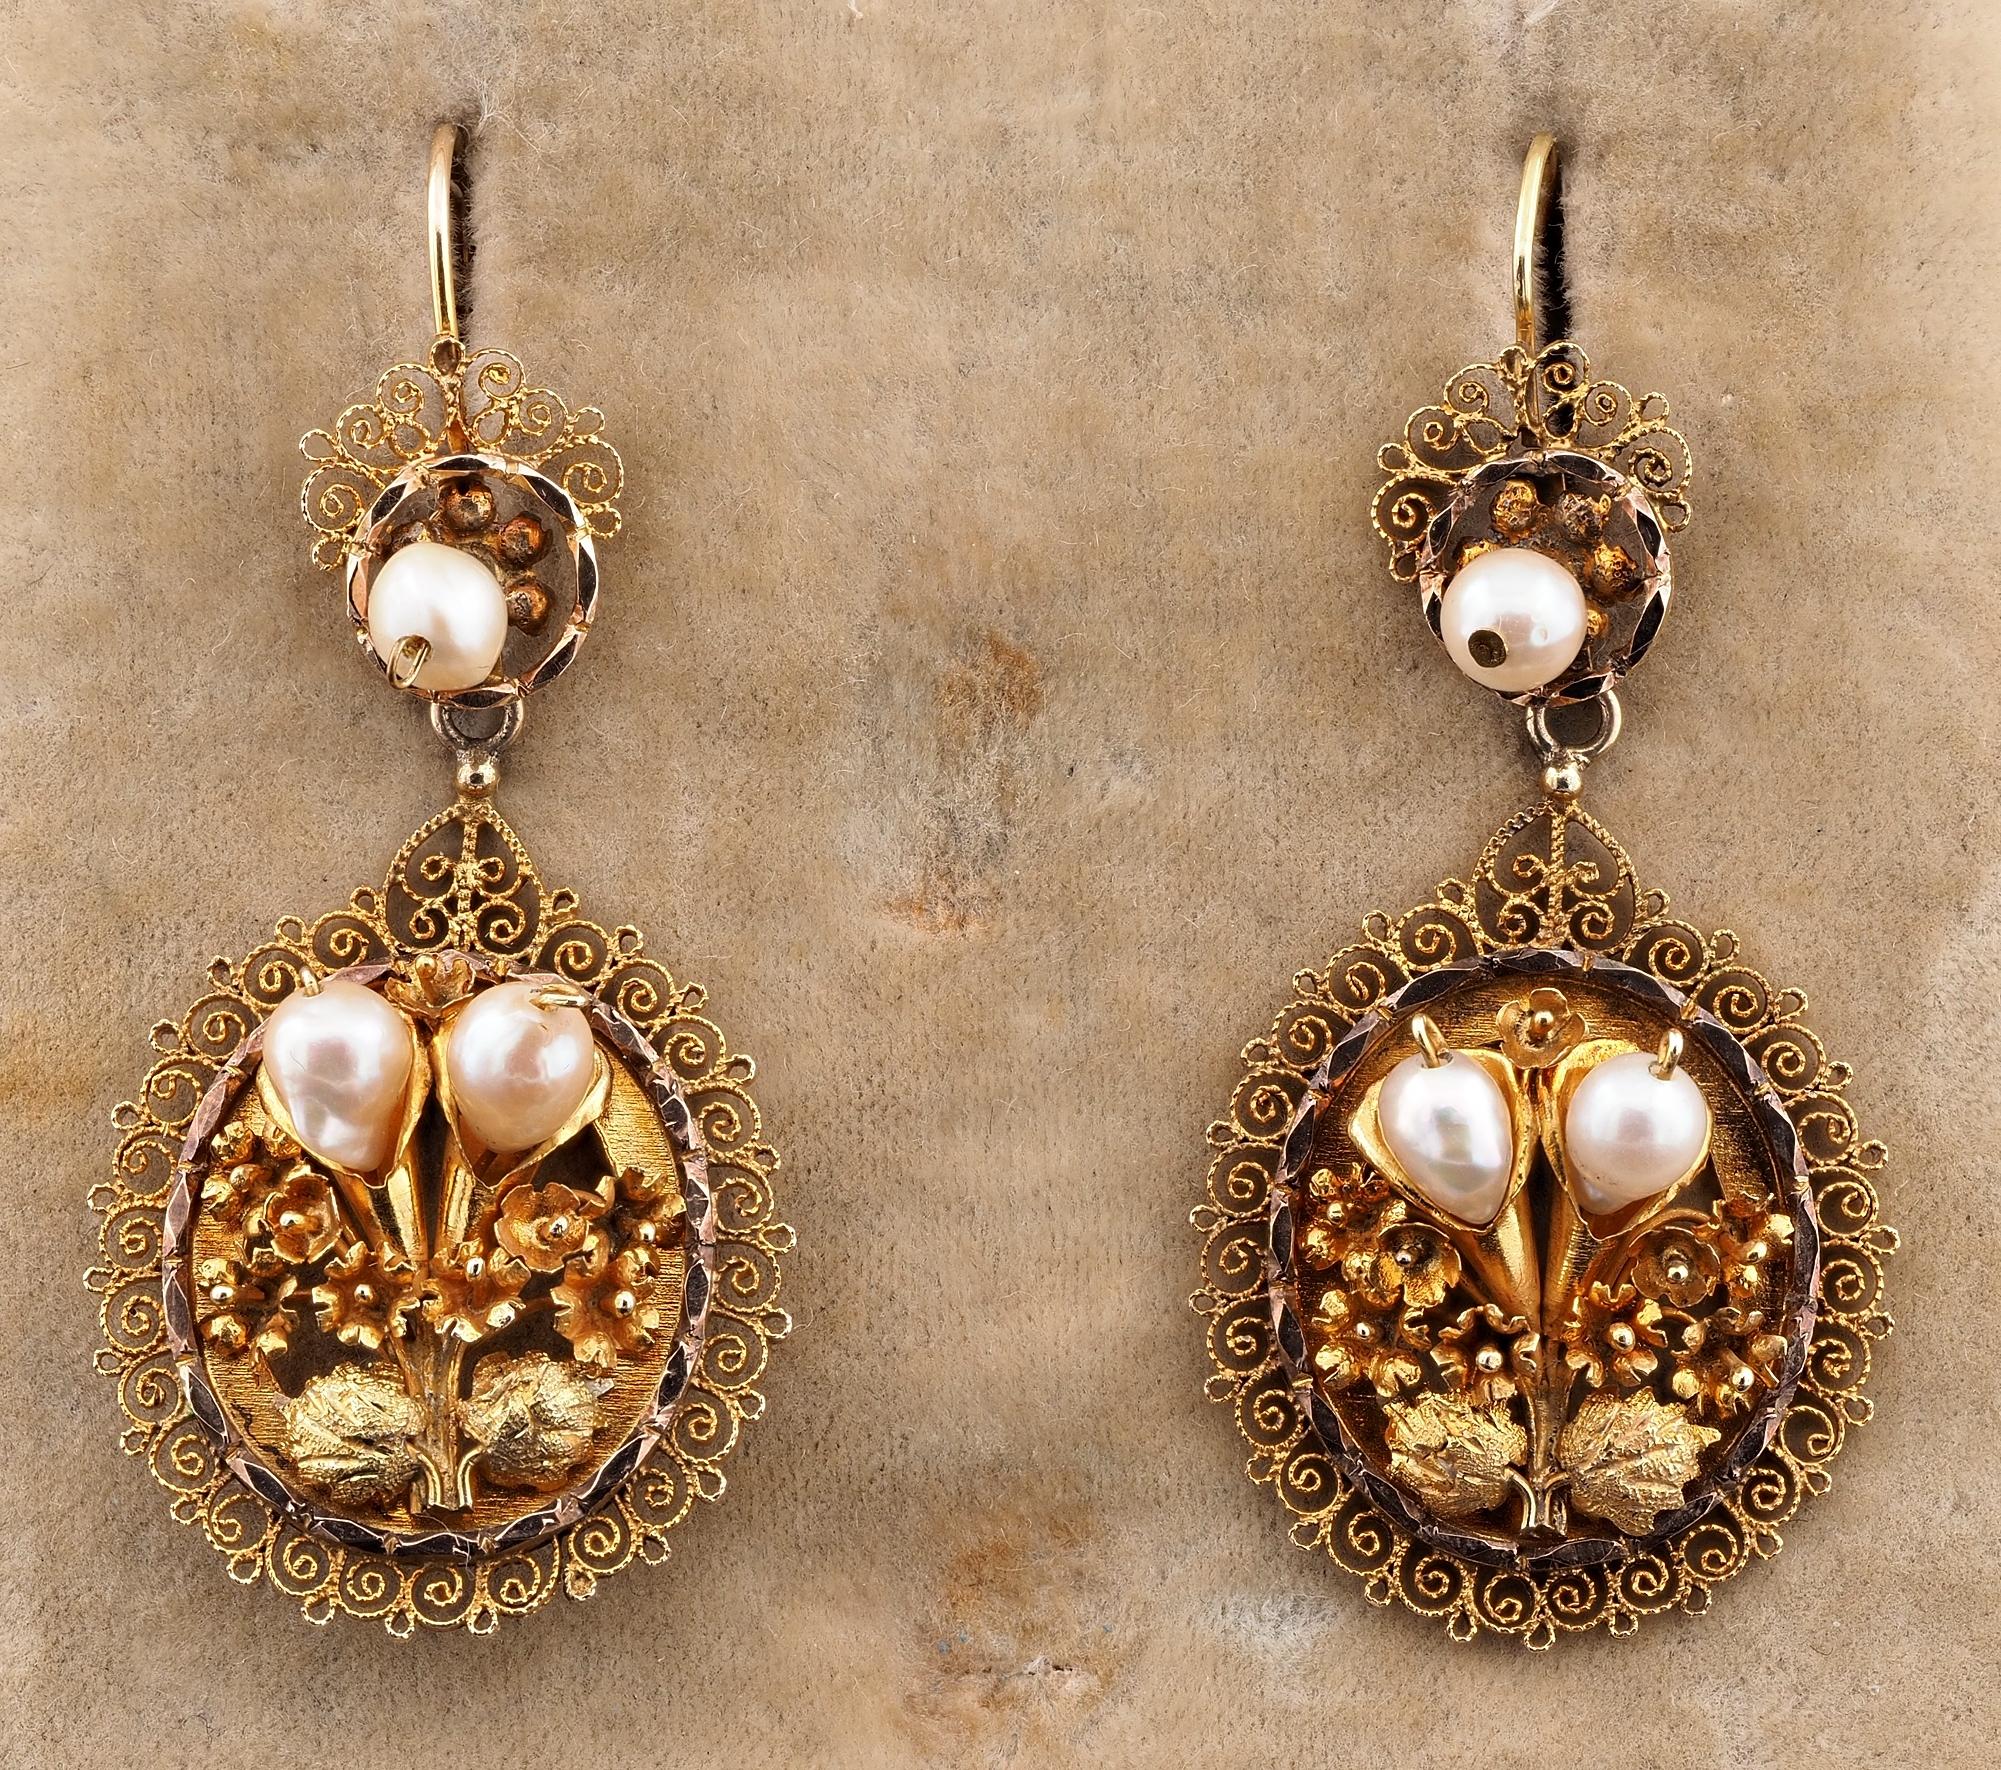 Vom Georgier zum Schatz
Ziemlich spektakulär im Design diese antiken Ohrringe, 18 KT massivem Gold, handgefertigt während der georgischen Periode, 1820 ca
Die Haupttafel ist ein großes Oval mit einem Blumenstrauß in der Mitte, dreidimensional aus